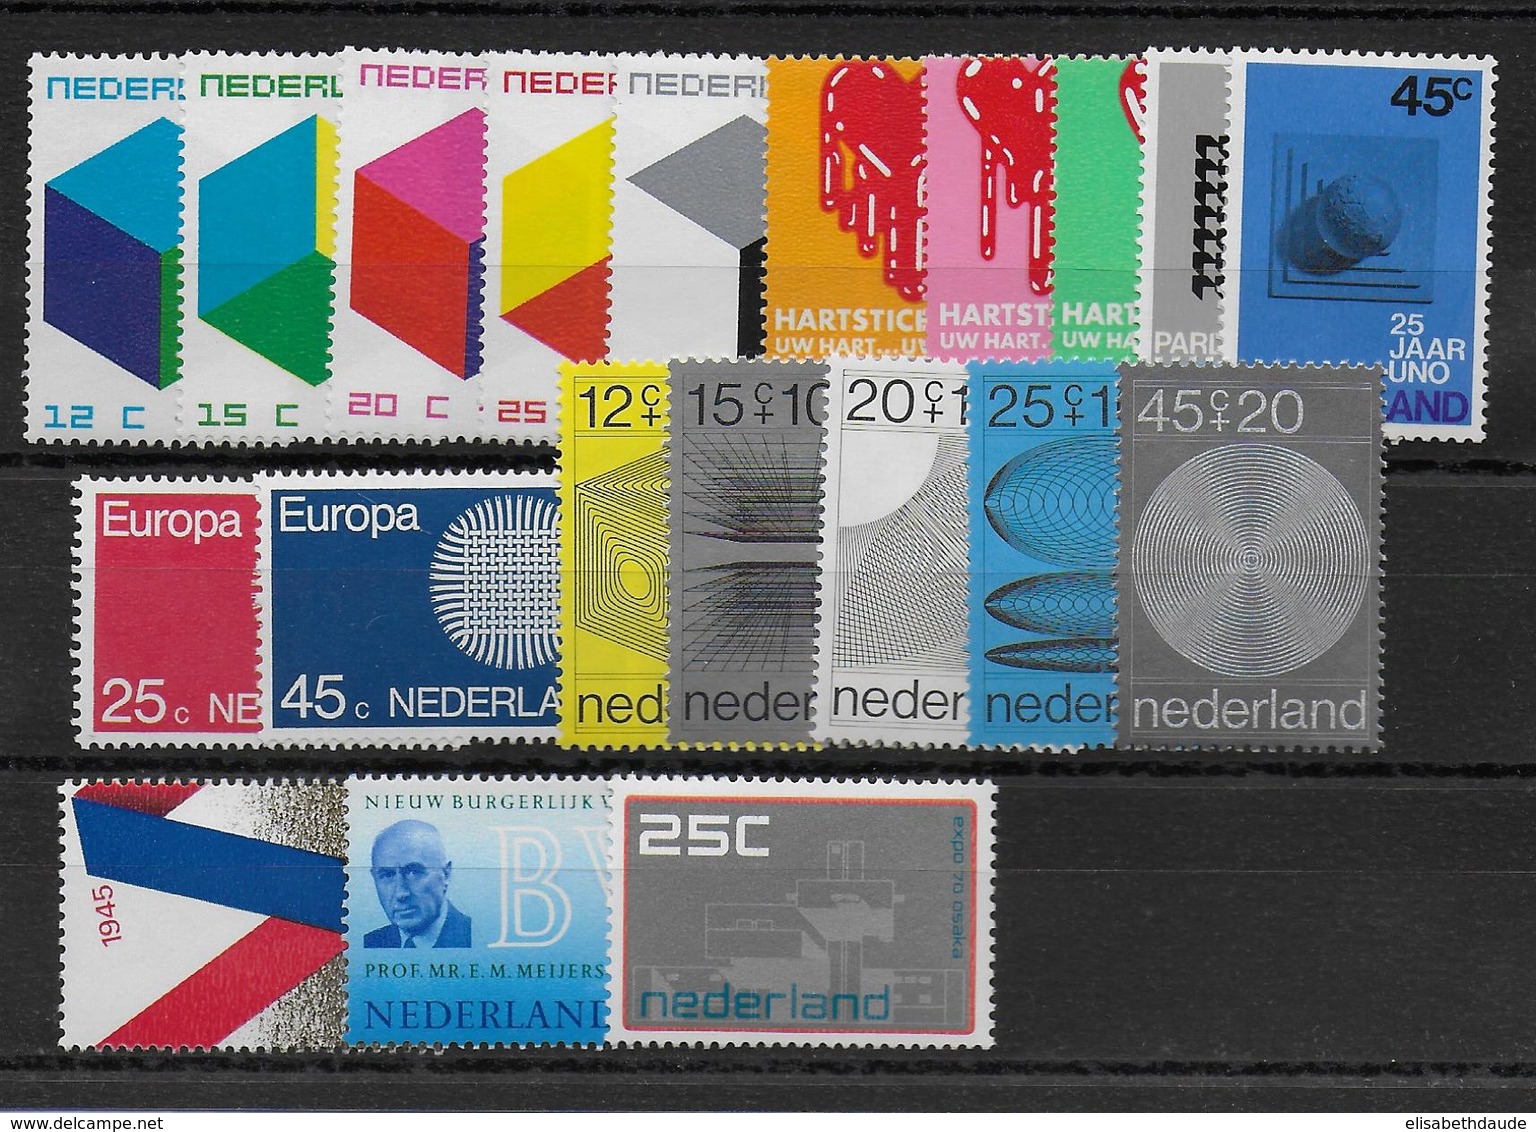 NEDERLAND - ANNEE COMPLETE 1970 ** MNH - COTE YVERT = 25 EUR. - 20 VALEURS - Volledig Jaar